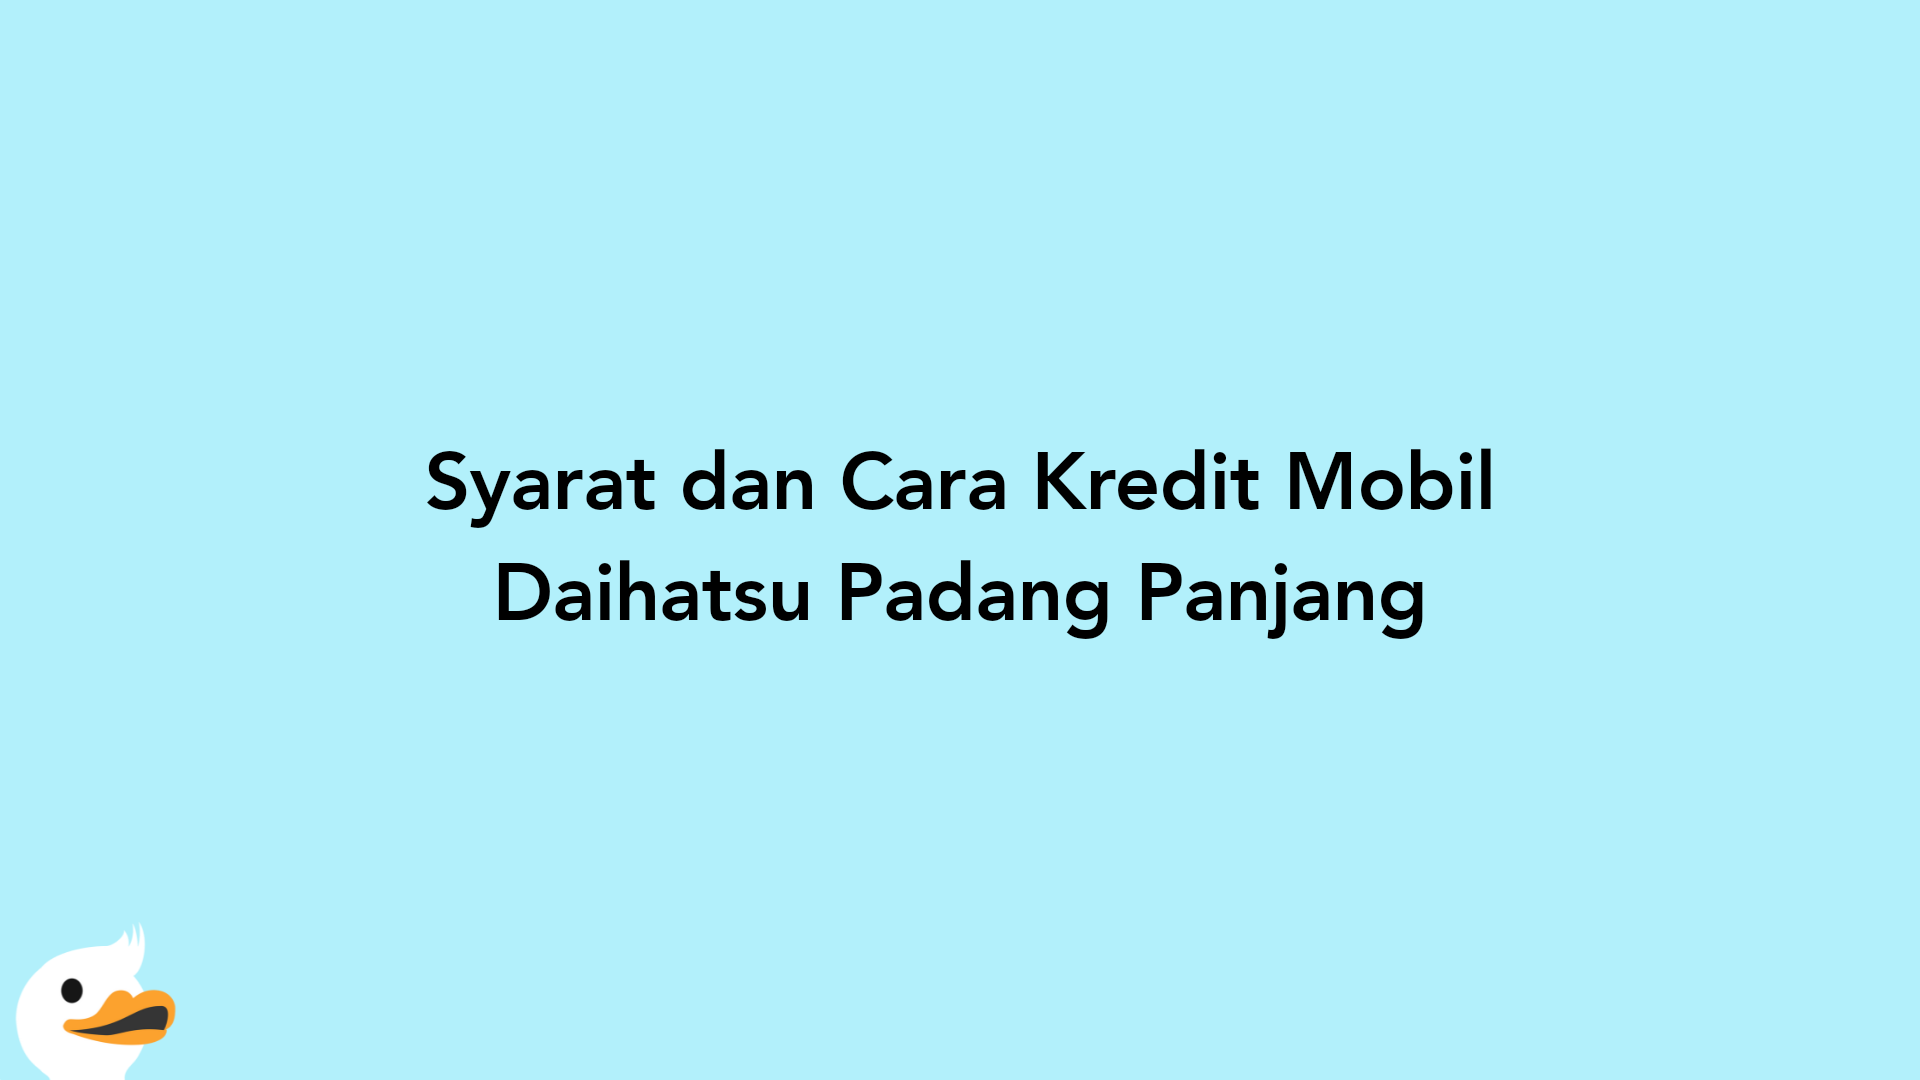 Syarat dan Cara Kredit Mobil Daihatsu Padang Panjang